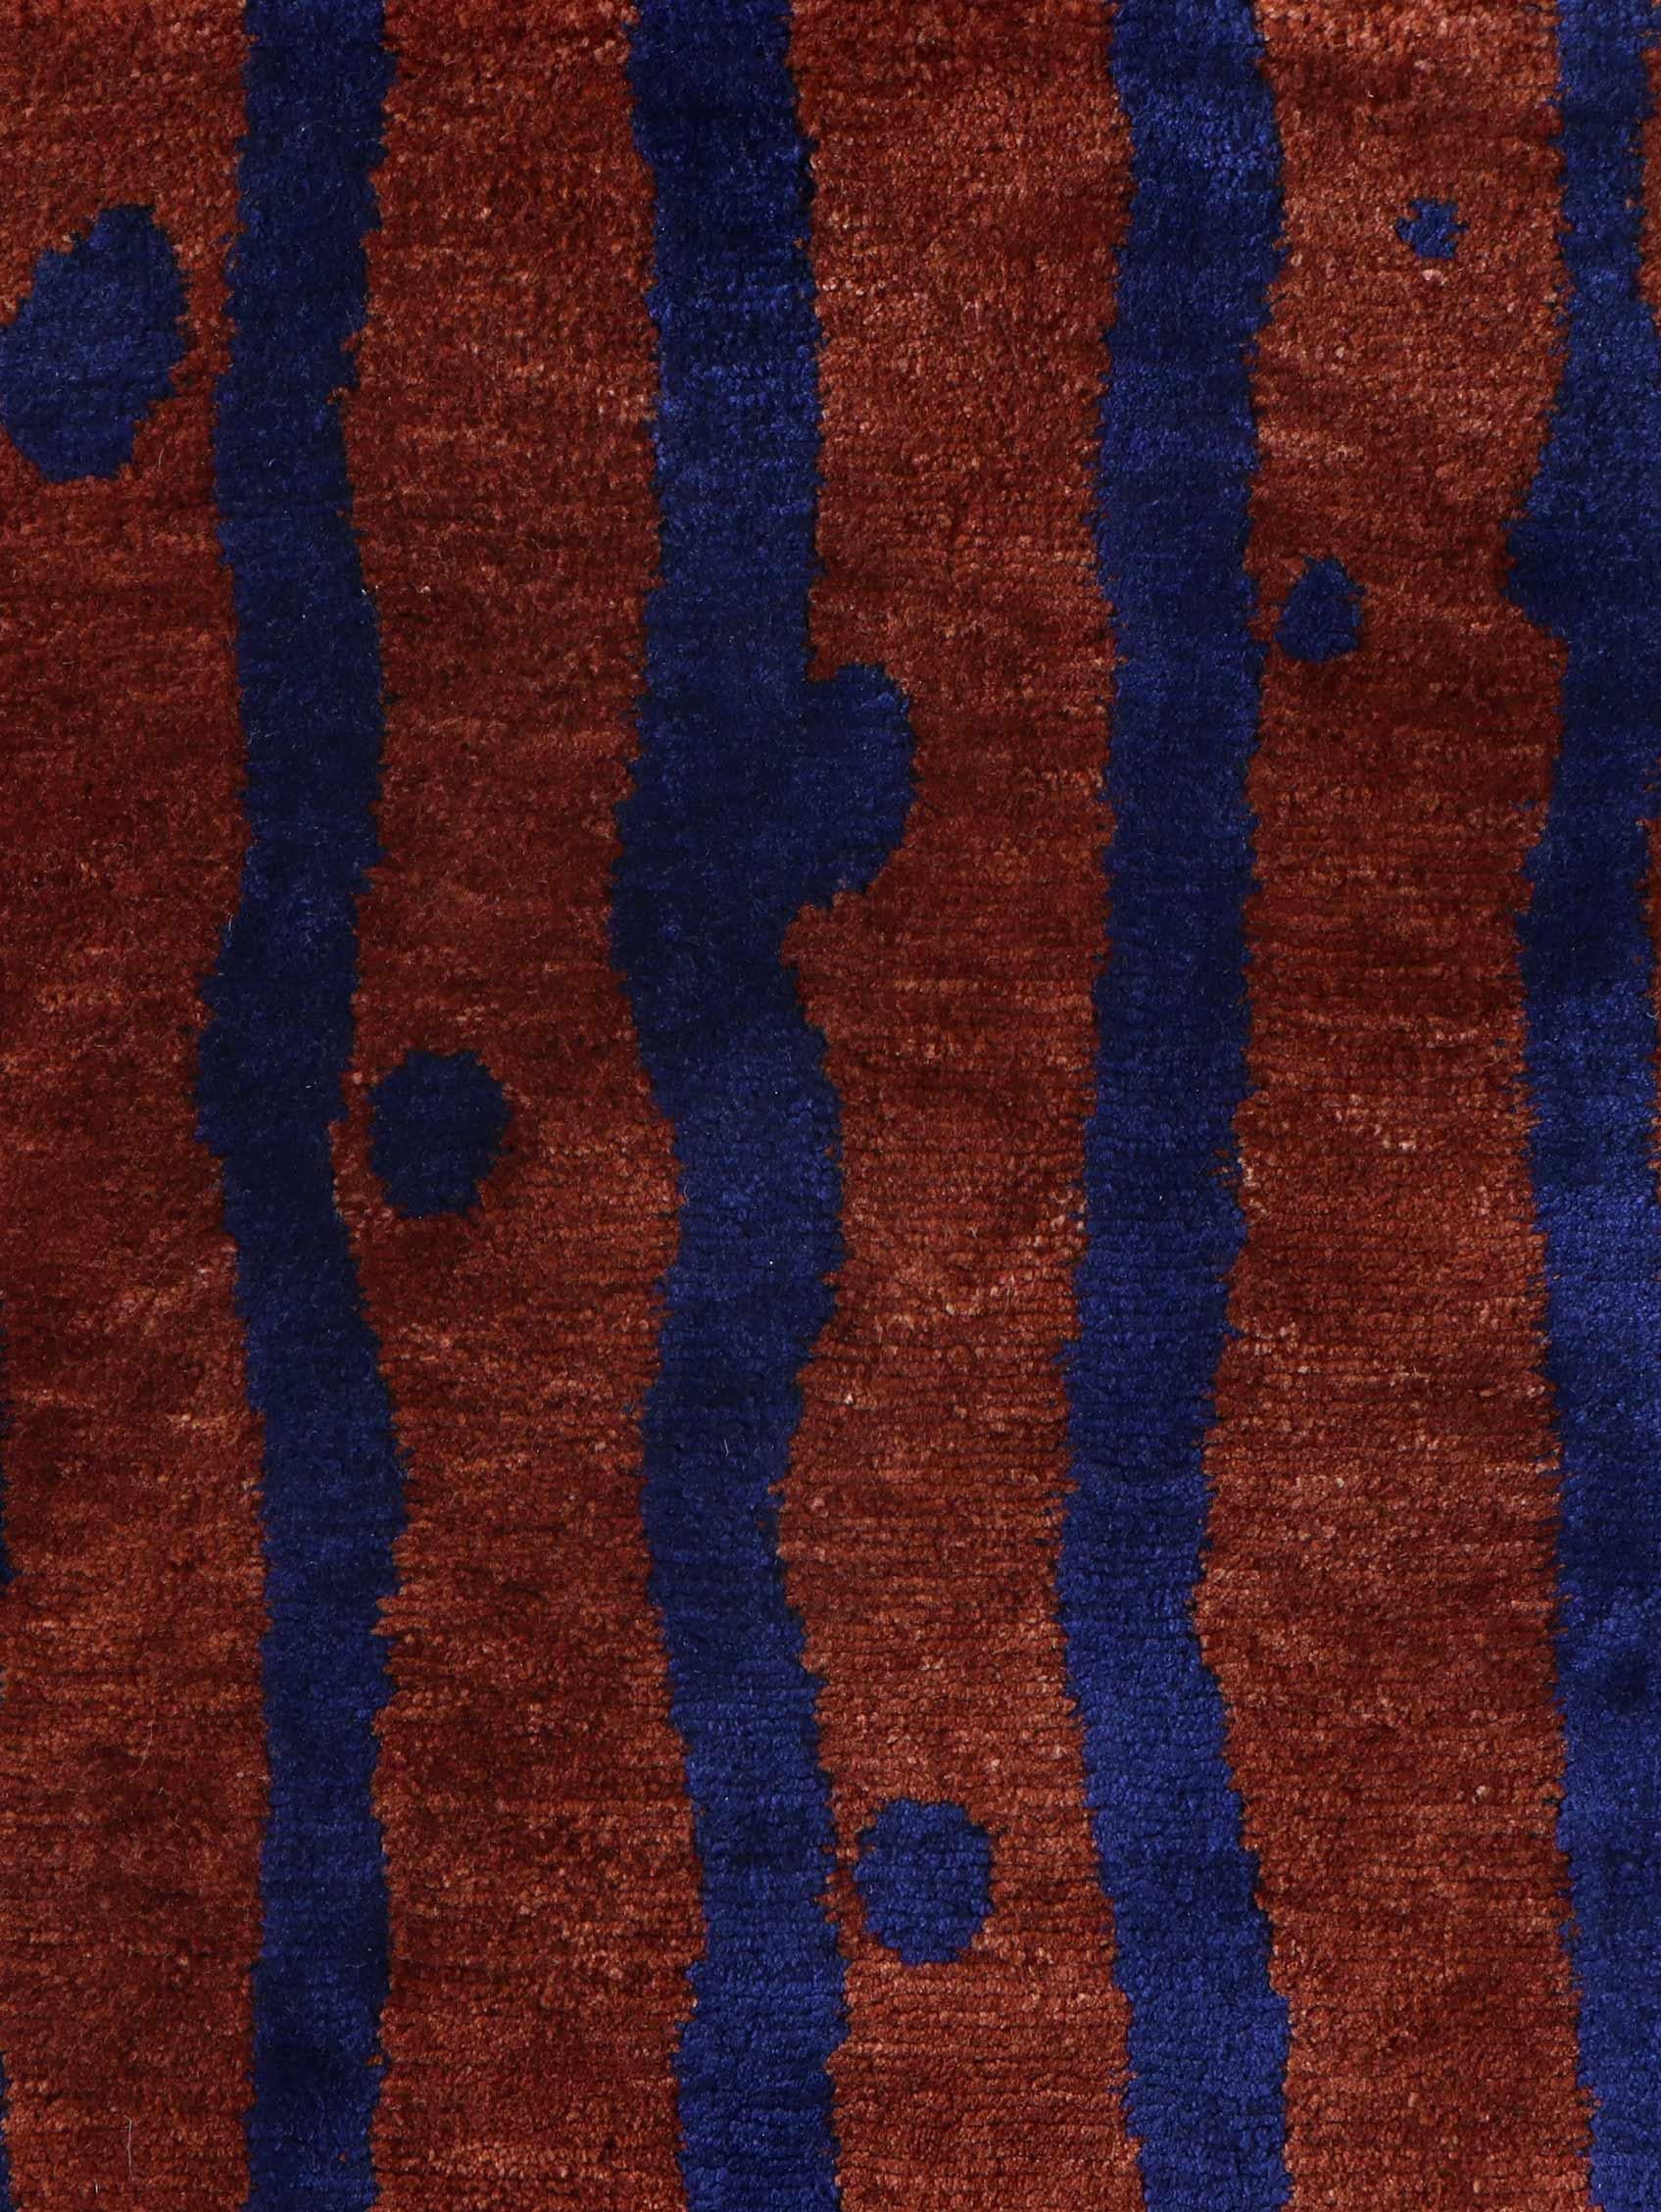 Muster des Teppichs: Drippy Stripe - Isthmus
MATERIAL: 100% Merinowolle
Qualität: Tibetisches Kreuzgeflecht, handgewebt 
Größe: 8'-0